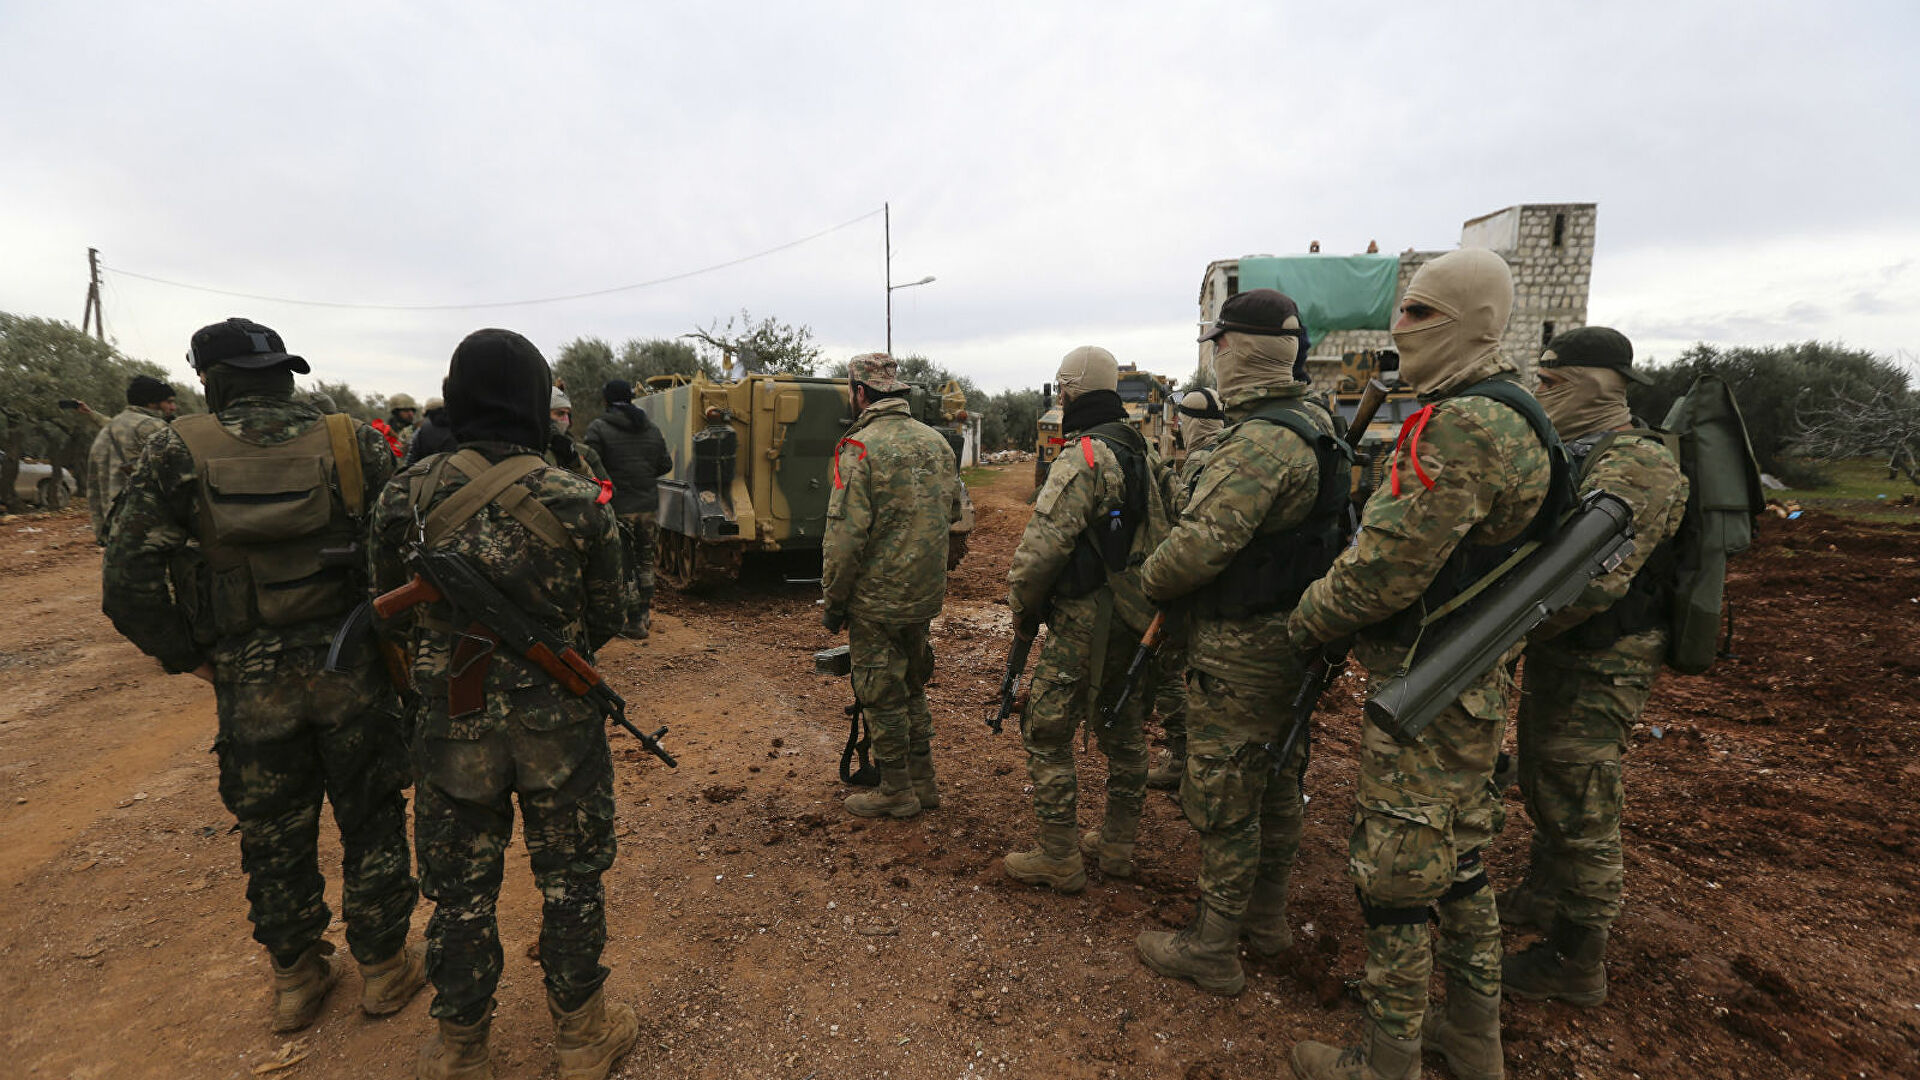 РИА Новости: Турция отправила на Украину более 2000 сирийских боевиков из Карабаха 